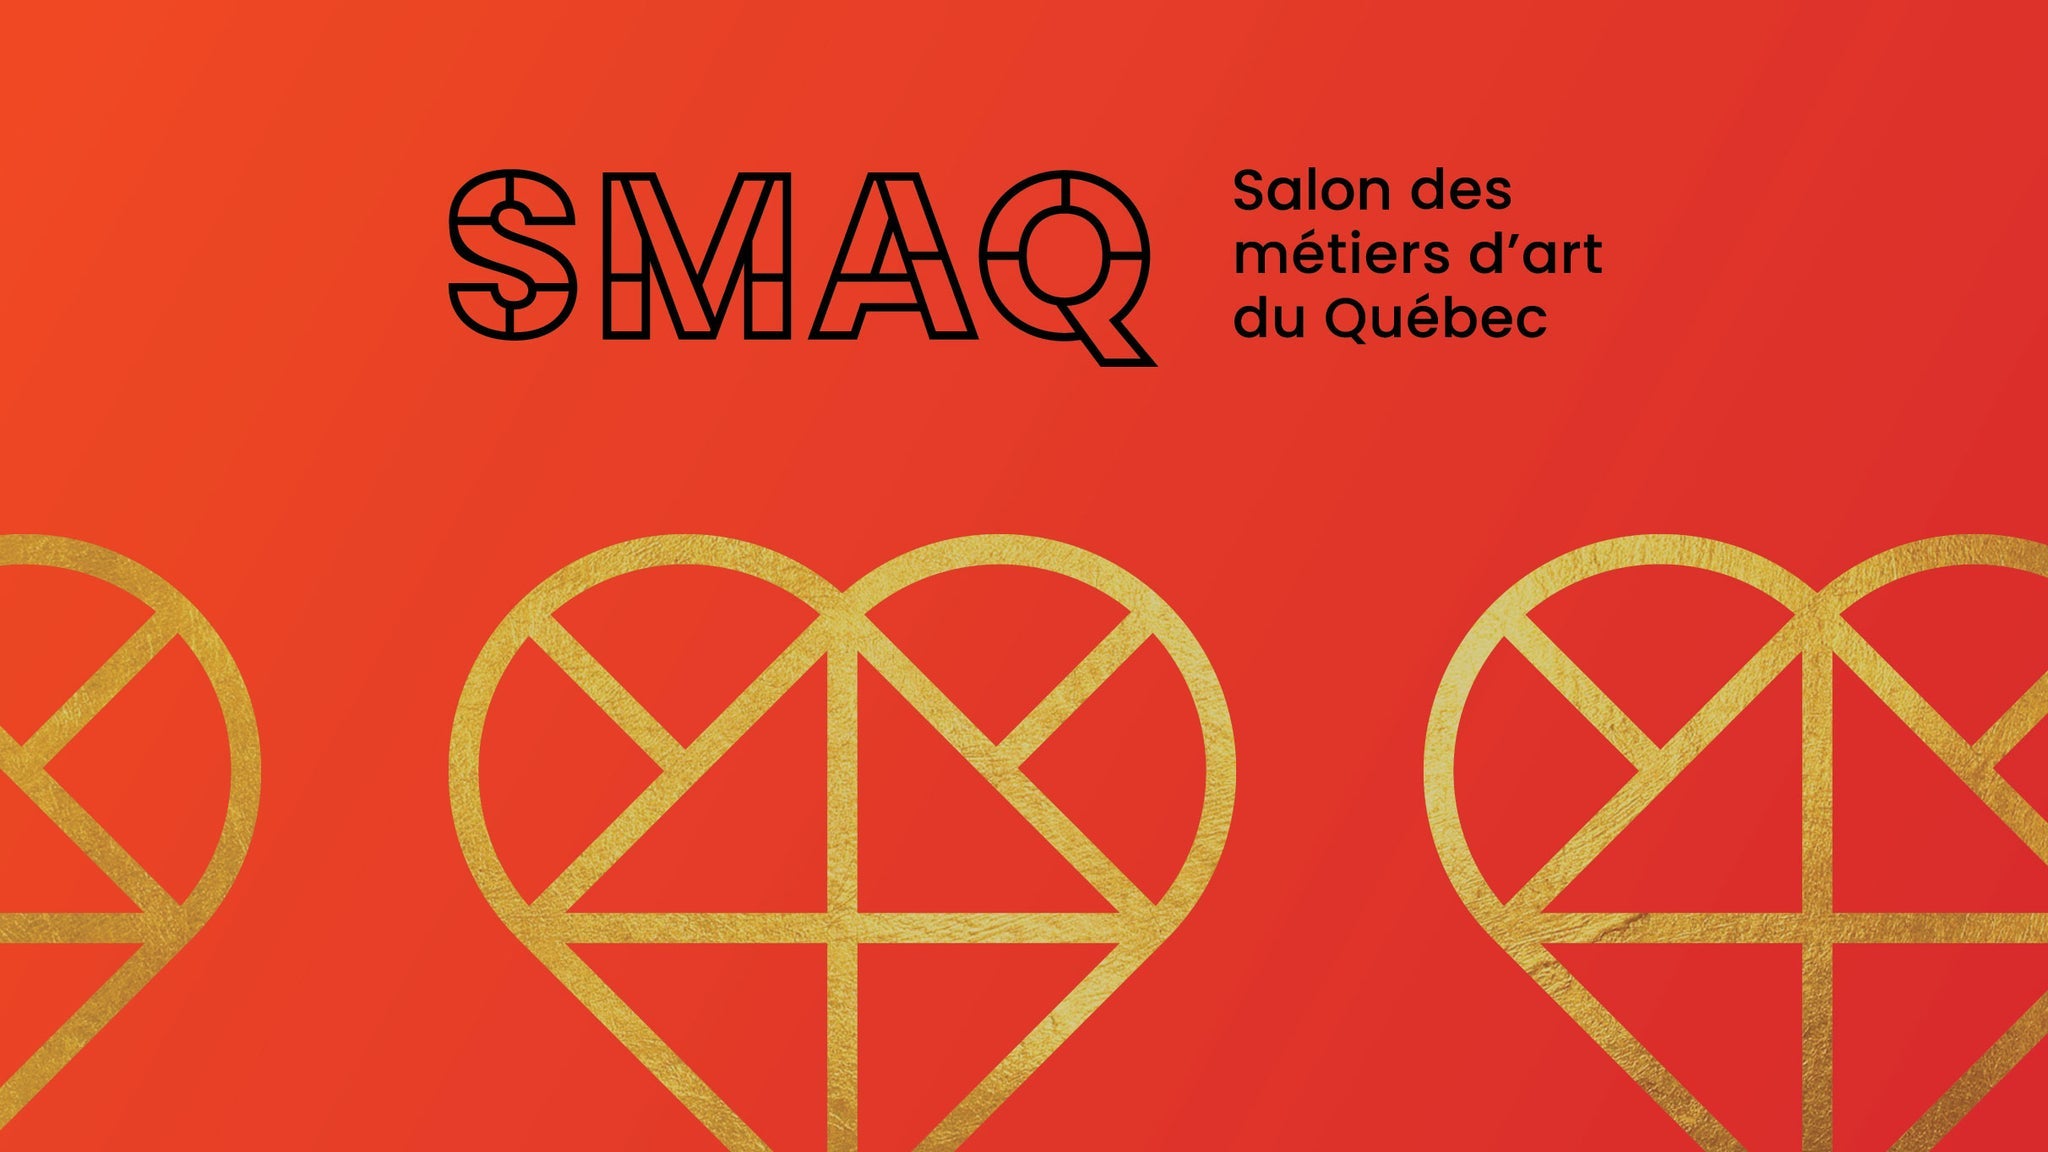 Salon des métiers d'art du Québec 2022 (SMAQ) in Montreal promo photo for Prévente SMAQ 2022 presale offer code